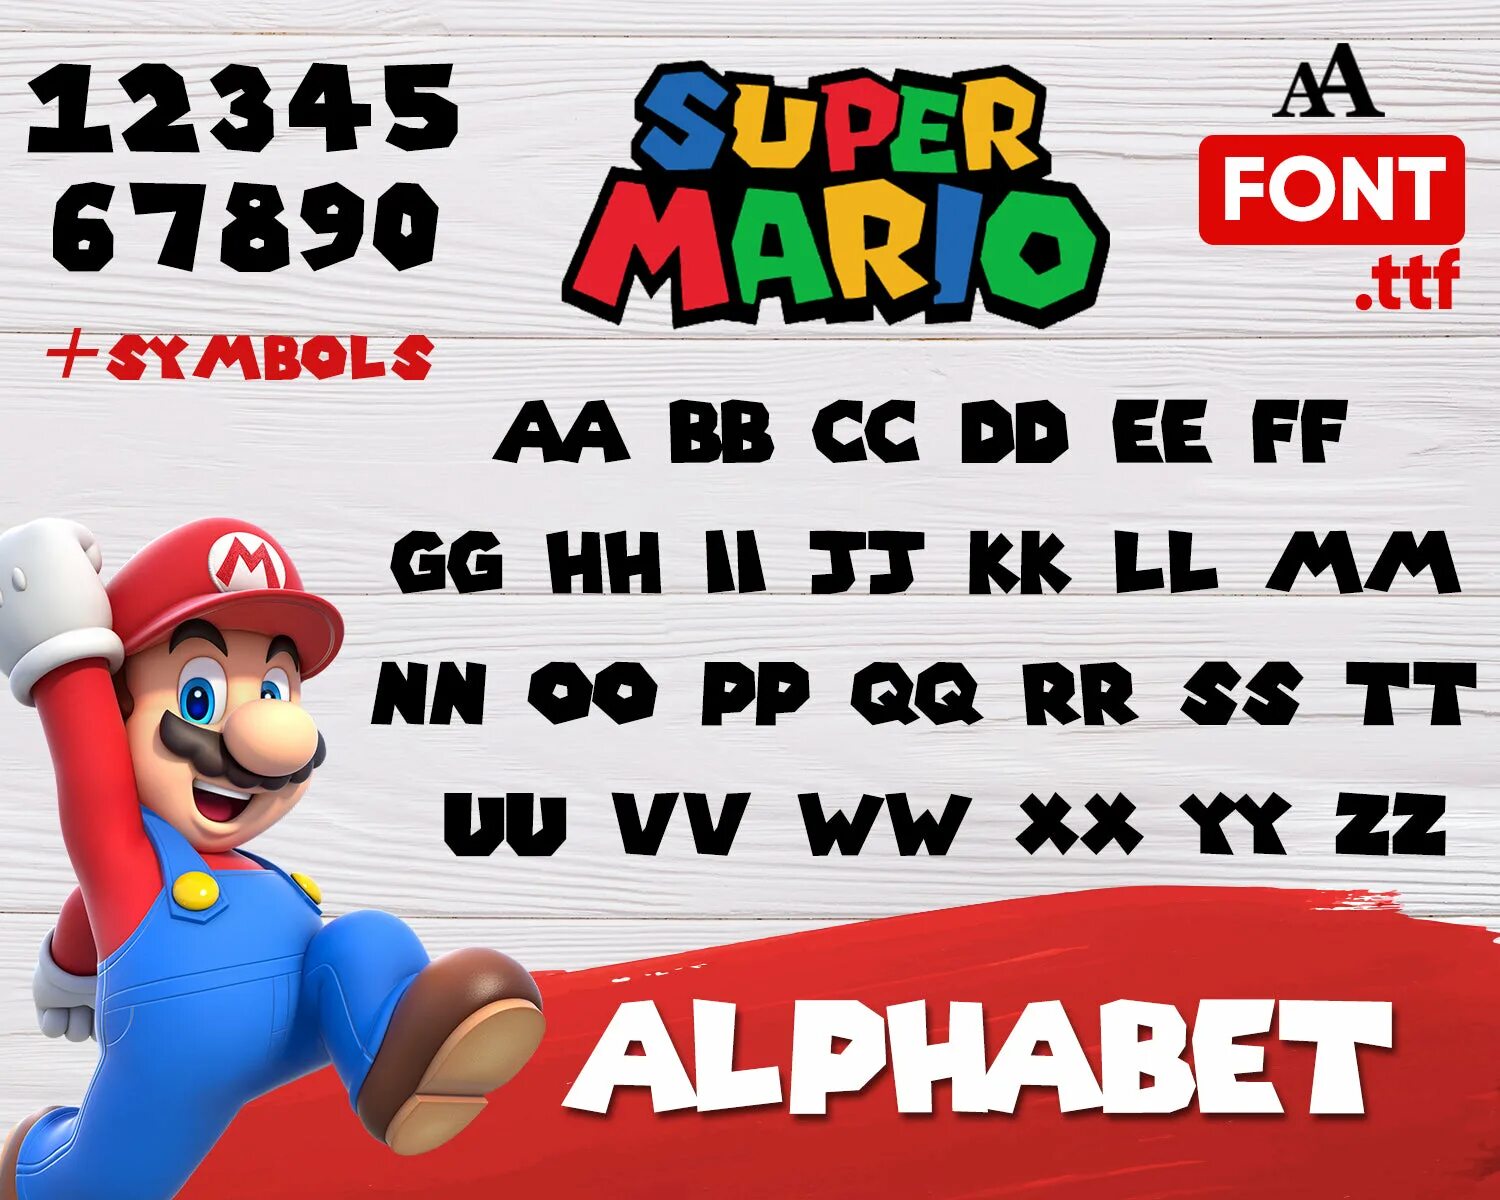 Super font. Шрифт Марио. Шрифт супер Марио. Super Mario Bros шрифт. Шрифт Марио русский.